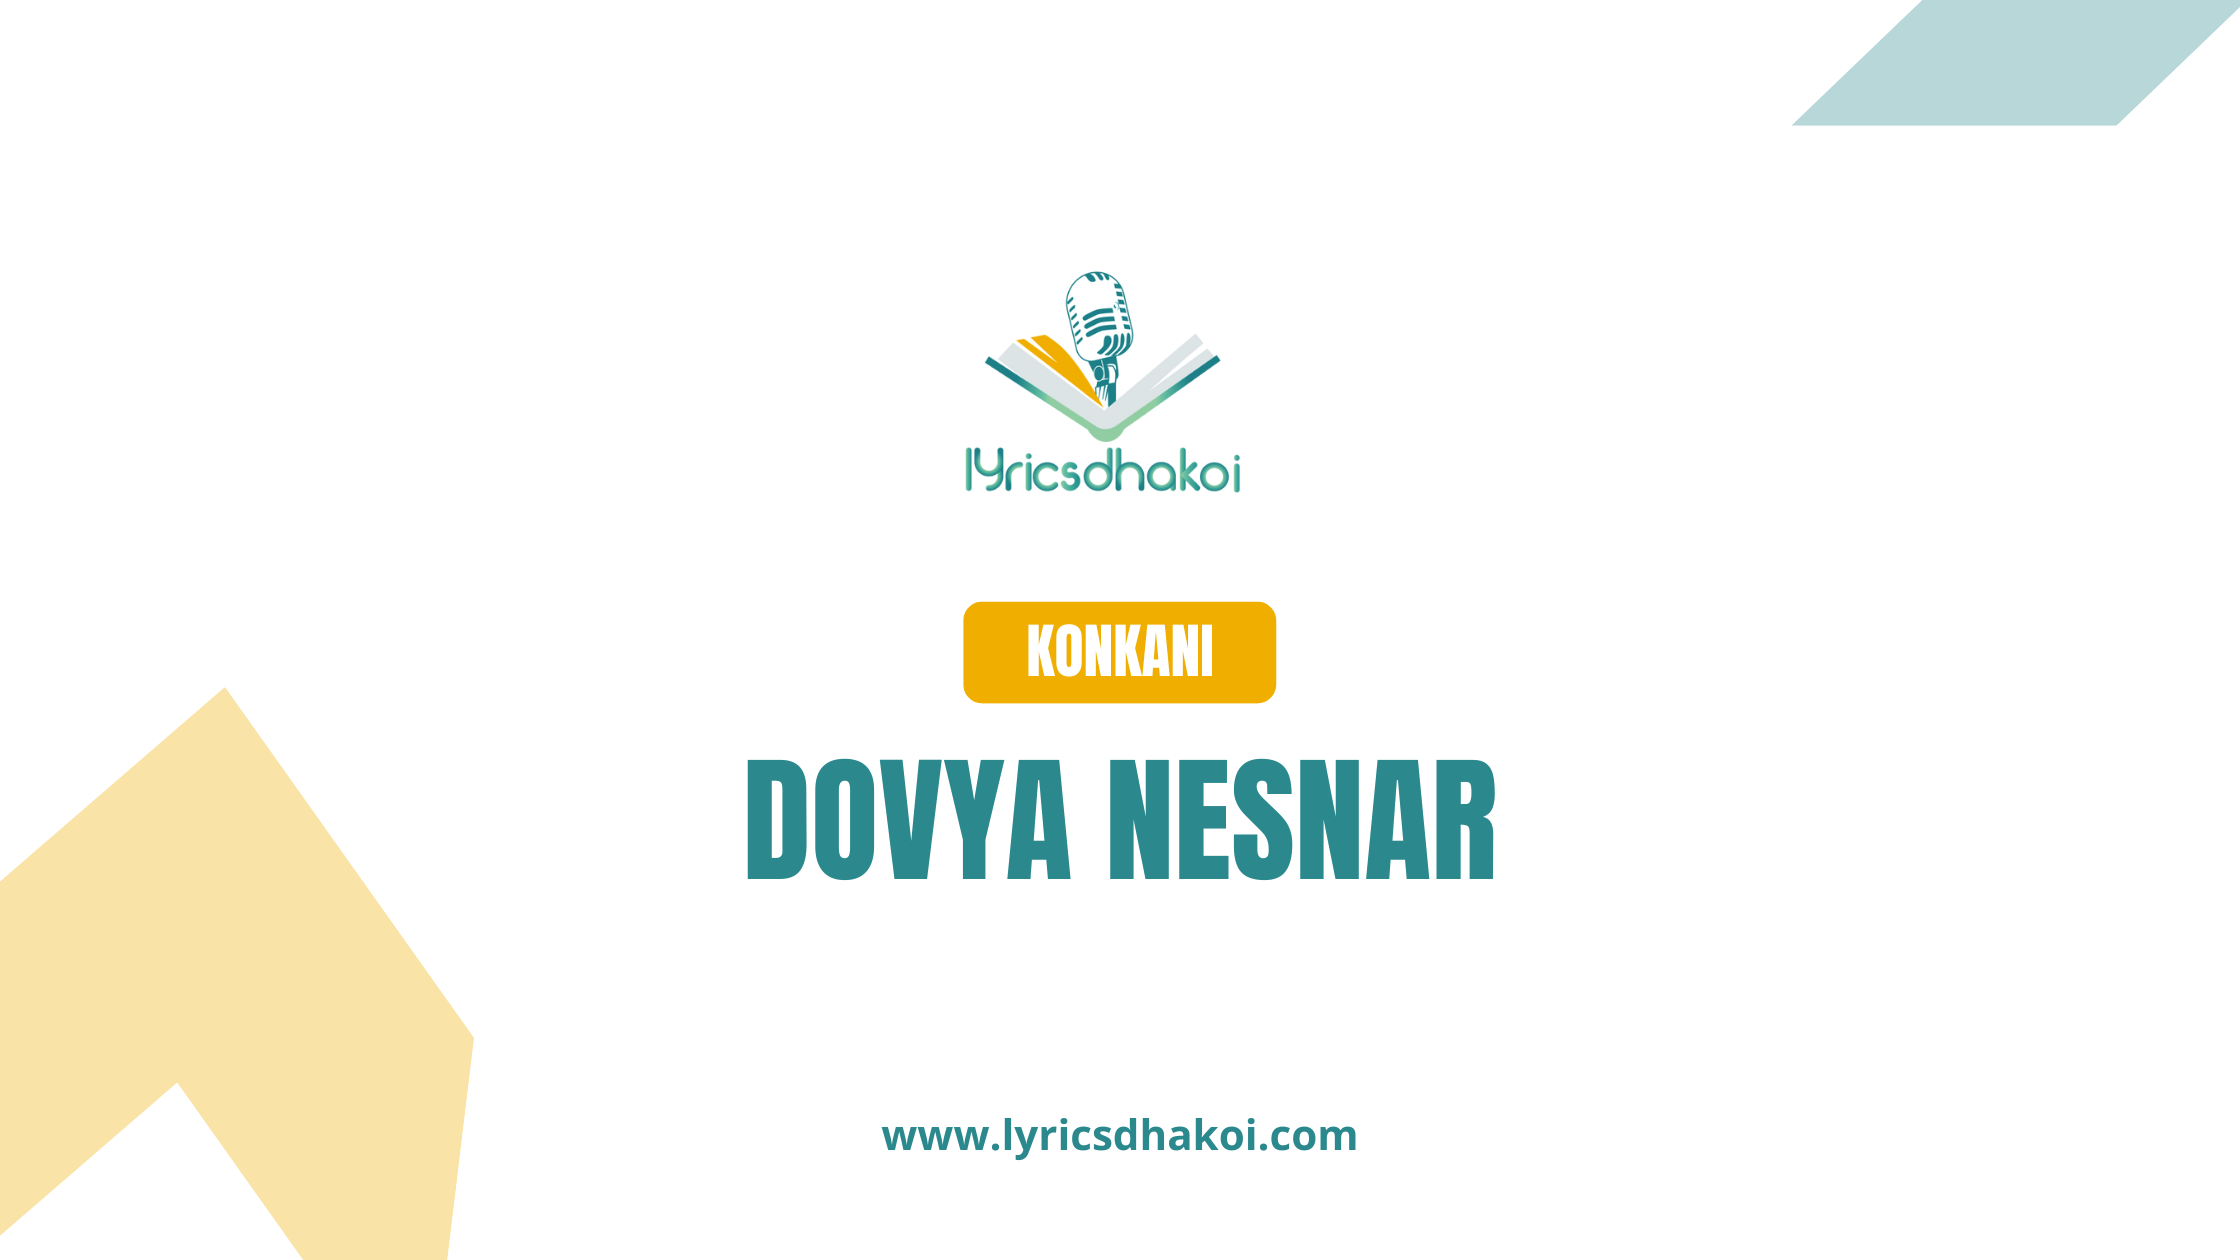 Dovya Nesnar Konkani Lyrics for Karaoke Online - LyricsDhakoi.com